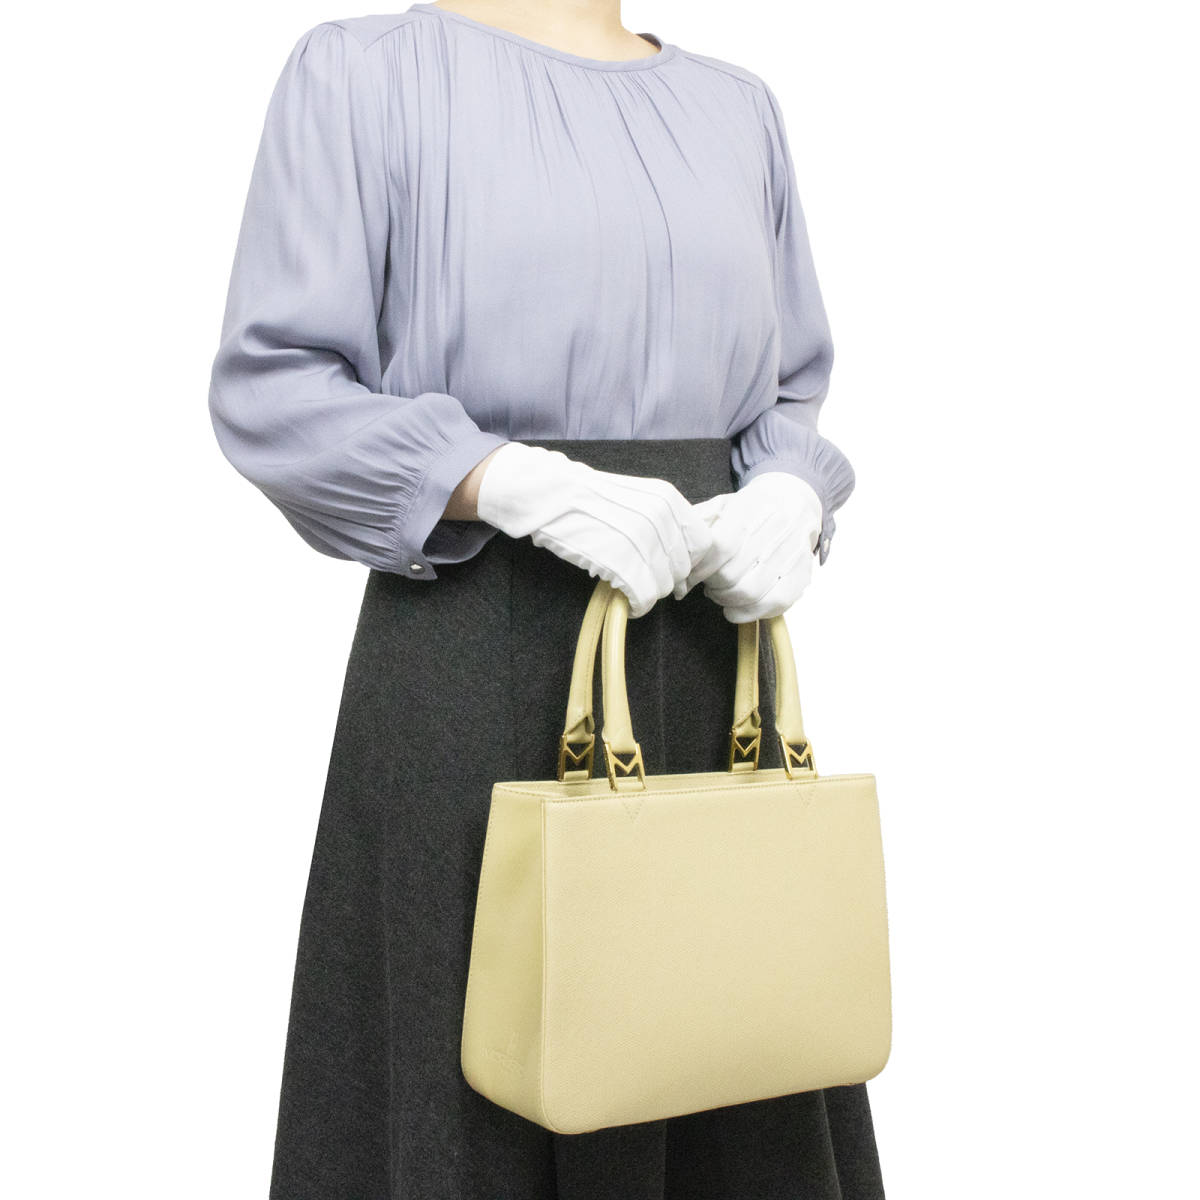 【全額返金保証・送料無料・極美品】モラビトのハンドバッグ 正規品 本革 ヴィンテージ 女性 カーフレザー 綺麗 シンプル 鞄 バックの画像2